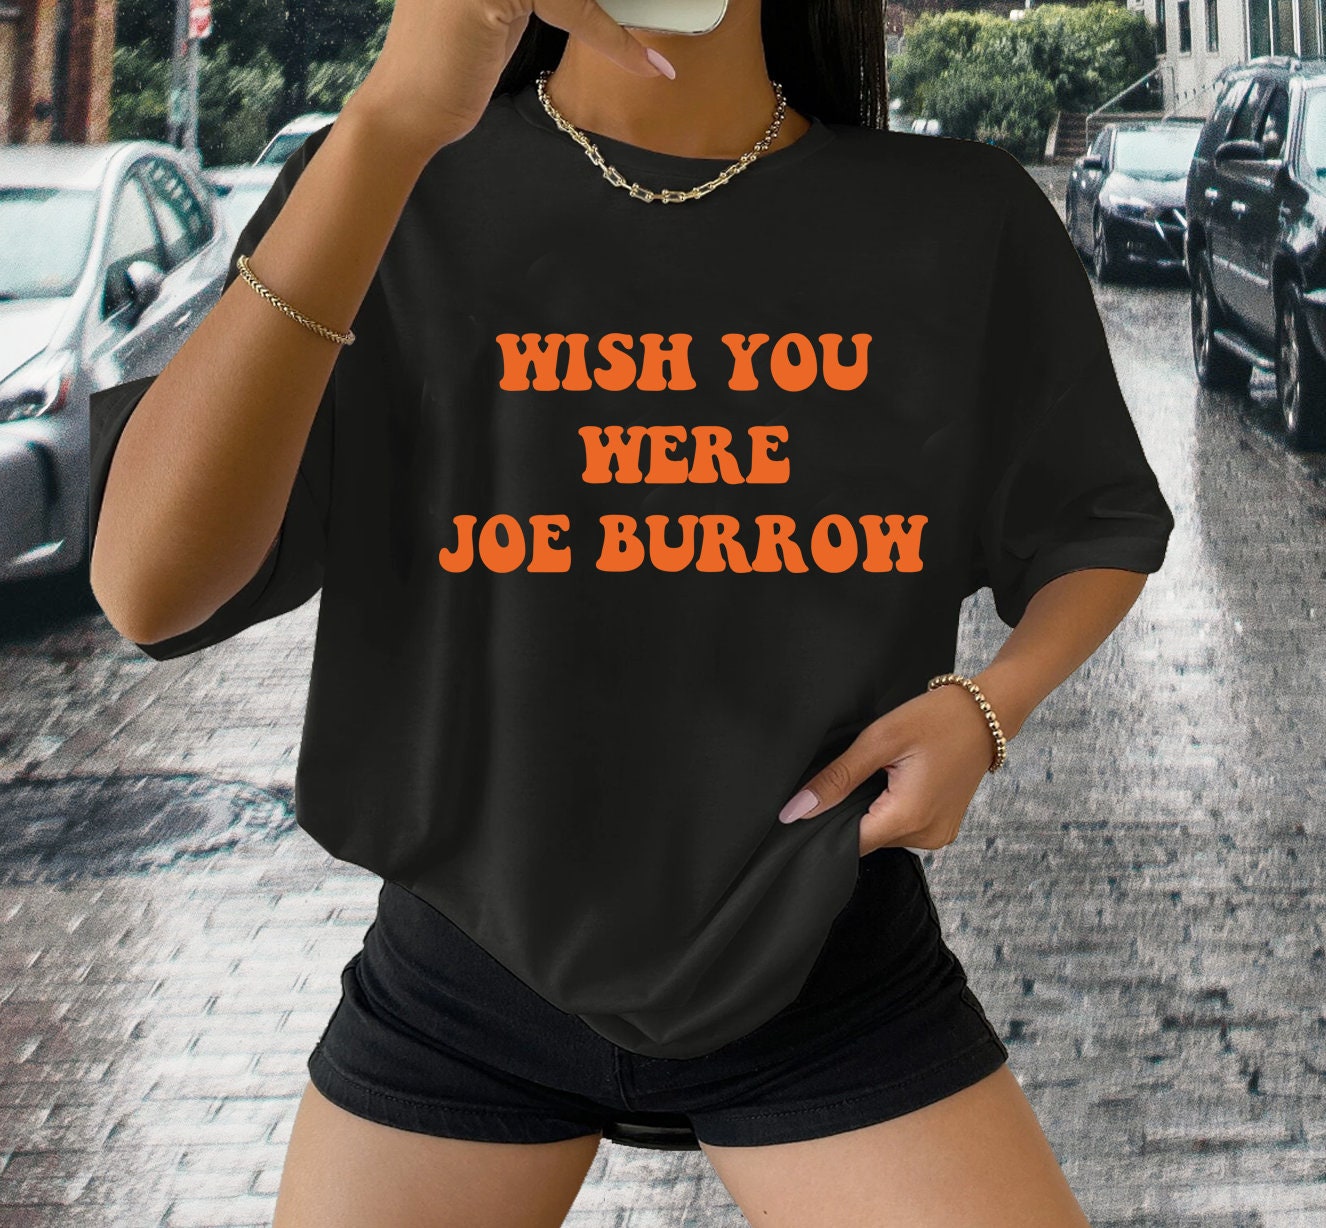 Wish You Were Joe Burrow Shirt - Joey B Shirt - Joe Burrow T-Shirt - Cincinnati Shirt